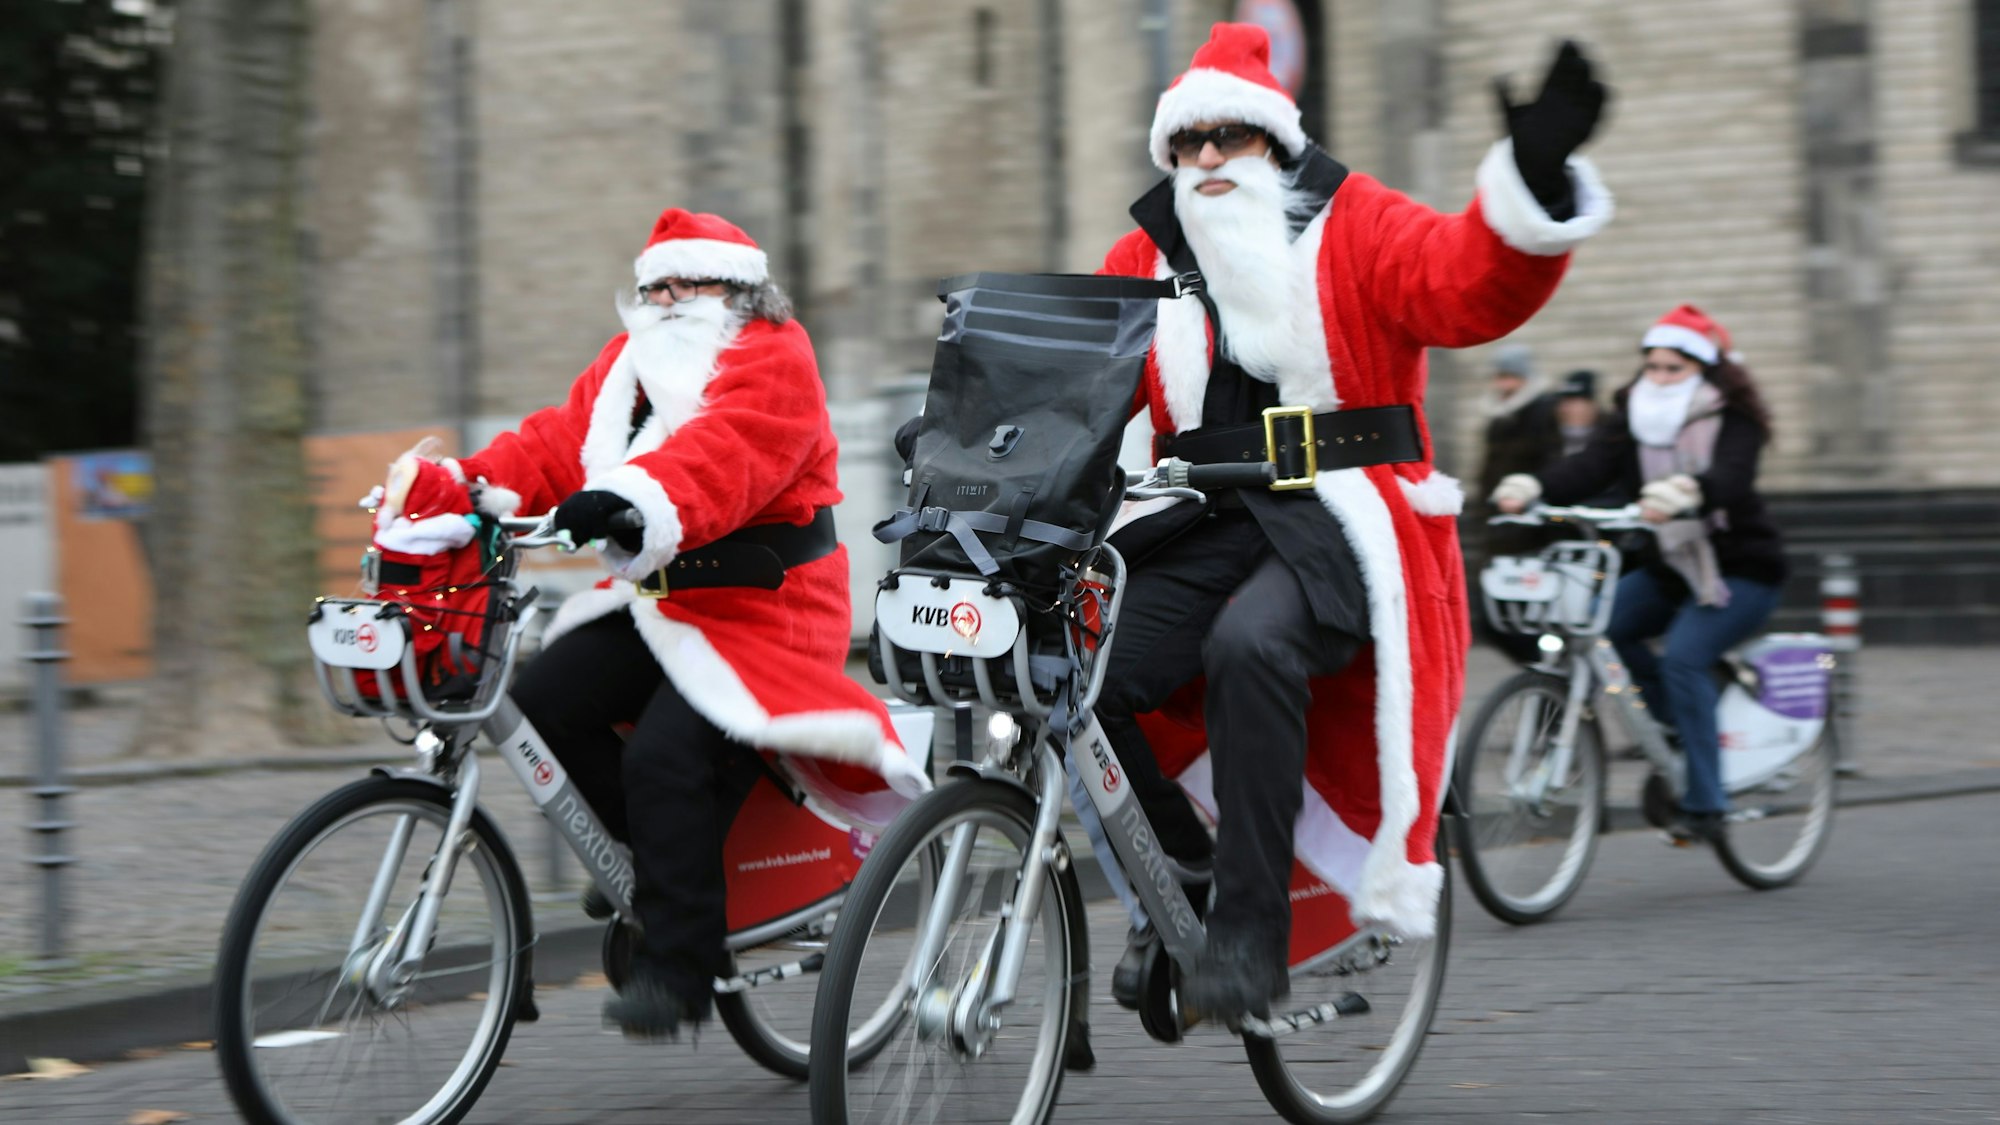 Zu sehen sind Menschen in Nikolaus-Kostüm auf Fahrrädern.